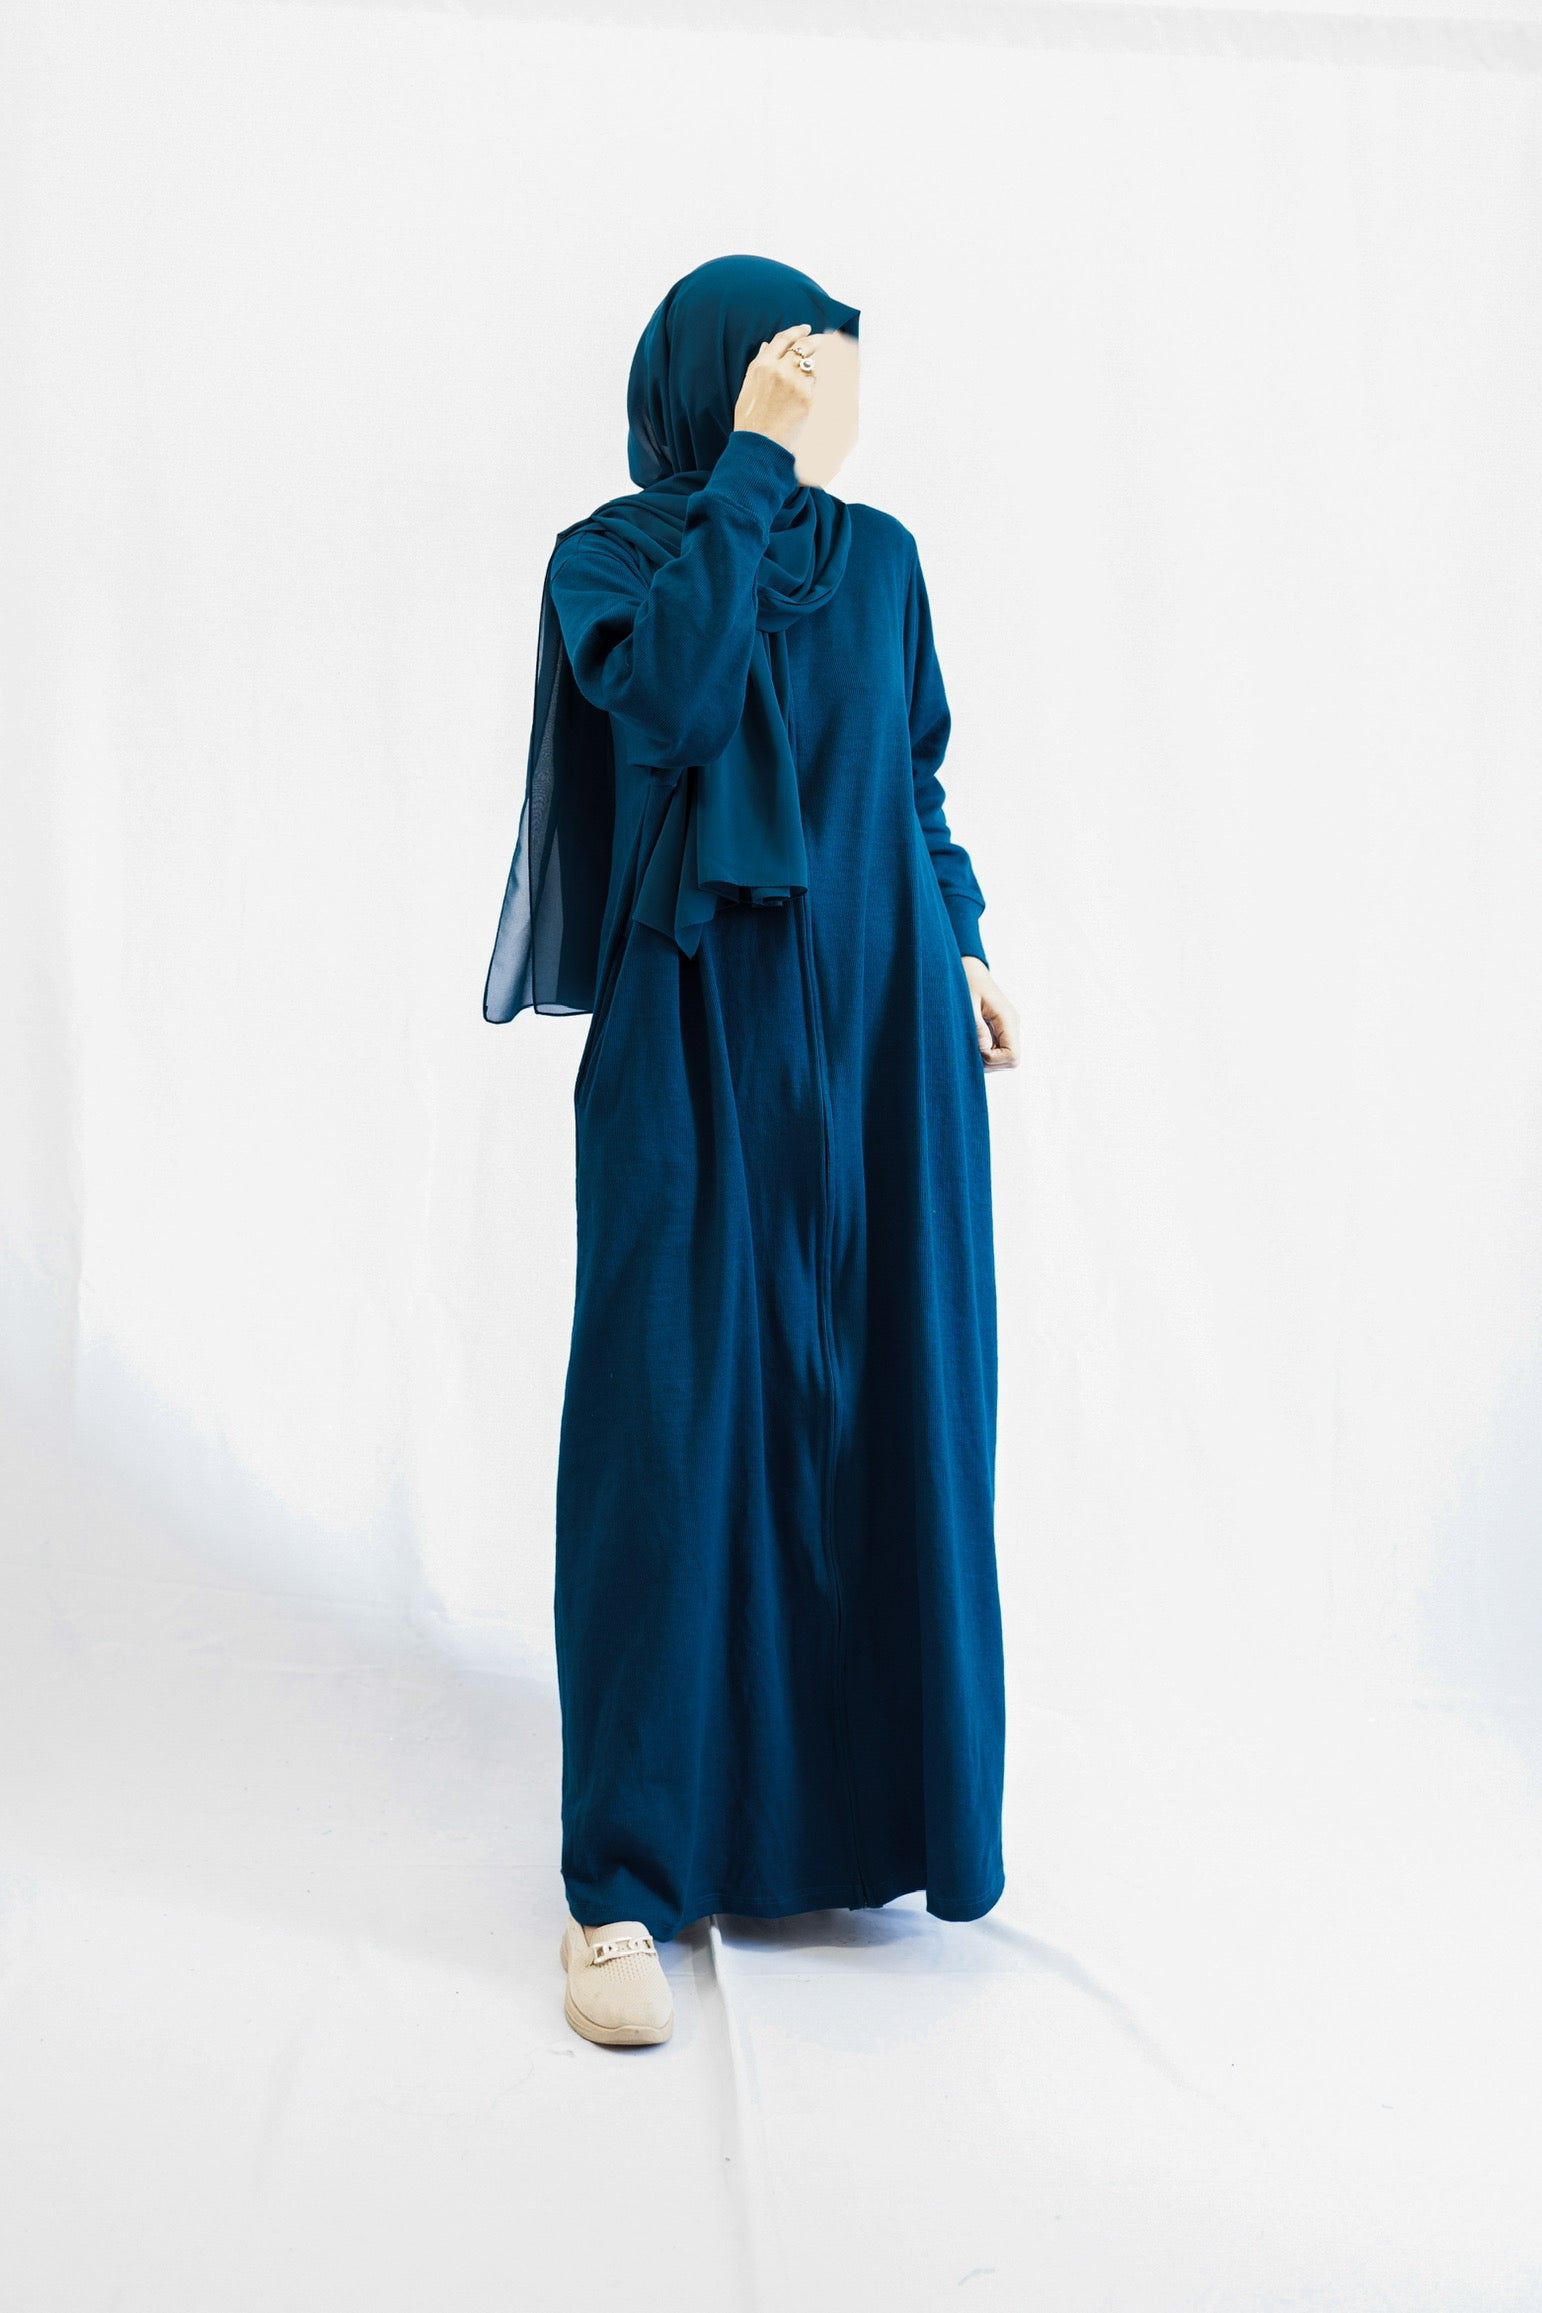 Moroccan Blue Knit Abaya Dress